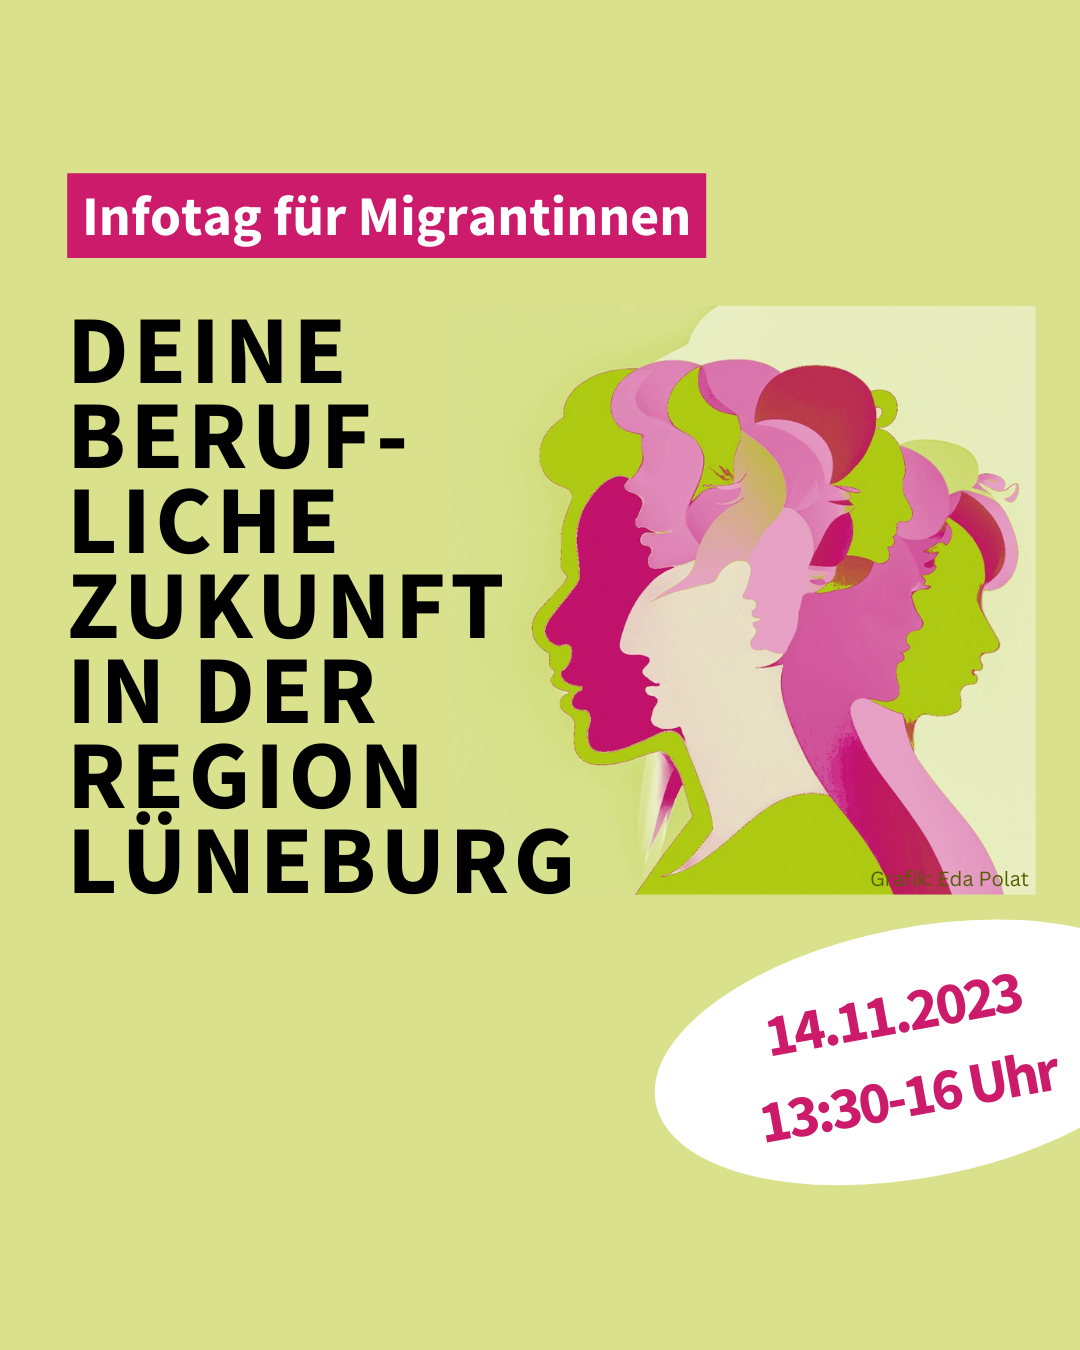 Info-Tag für Migrantinnen in Lüneburg